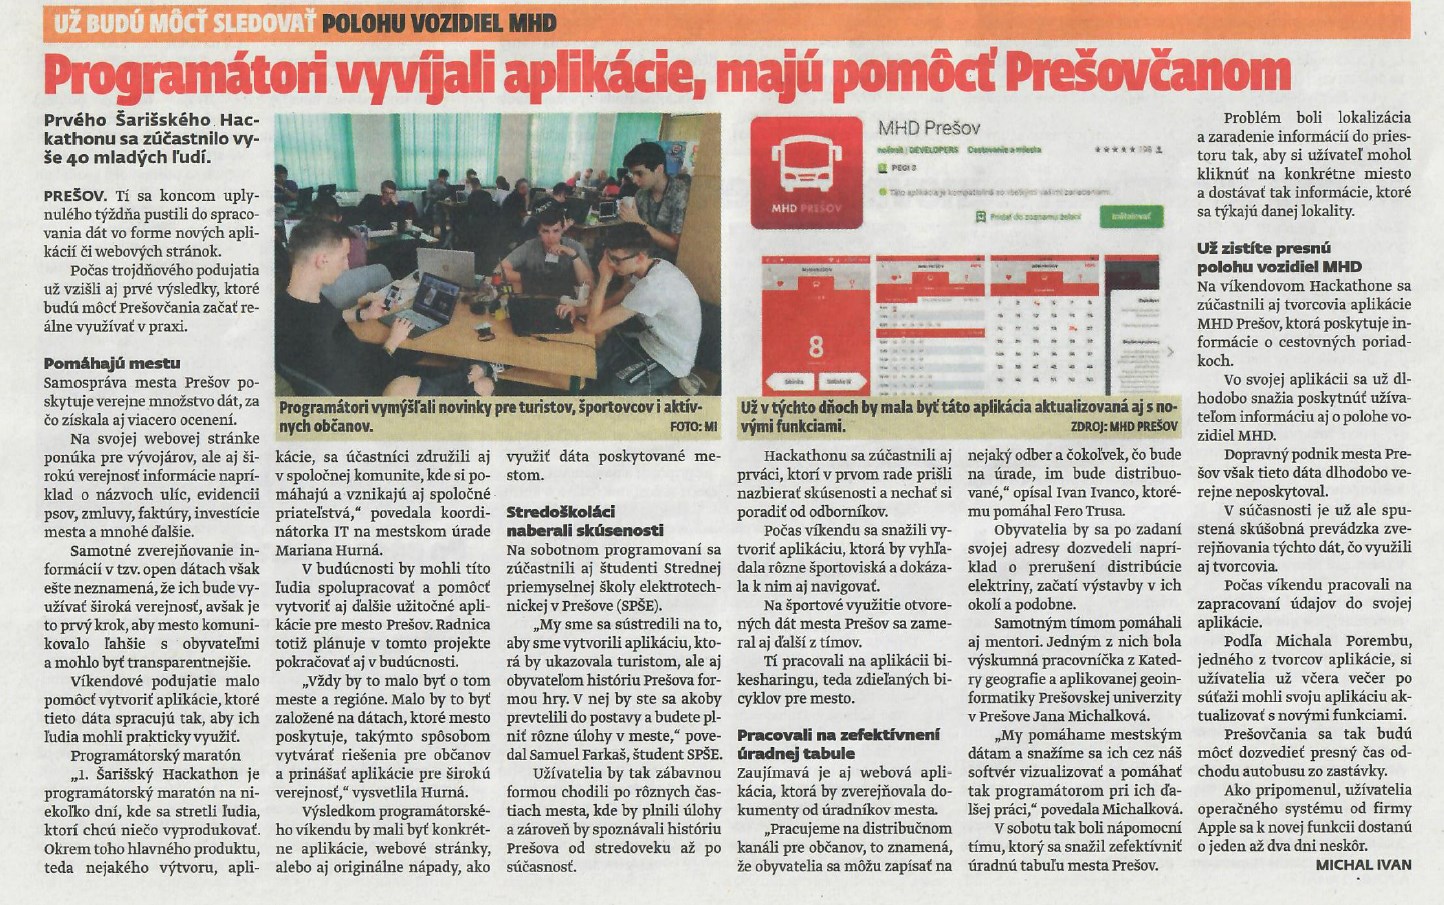 1.Šarišský hackathon - Prešov